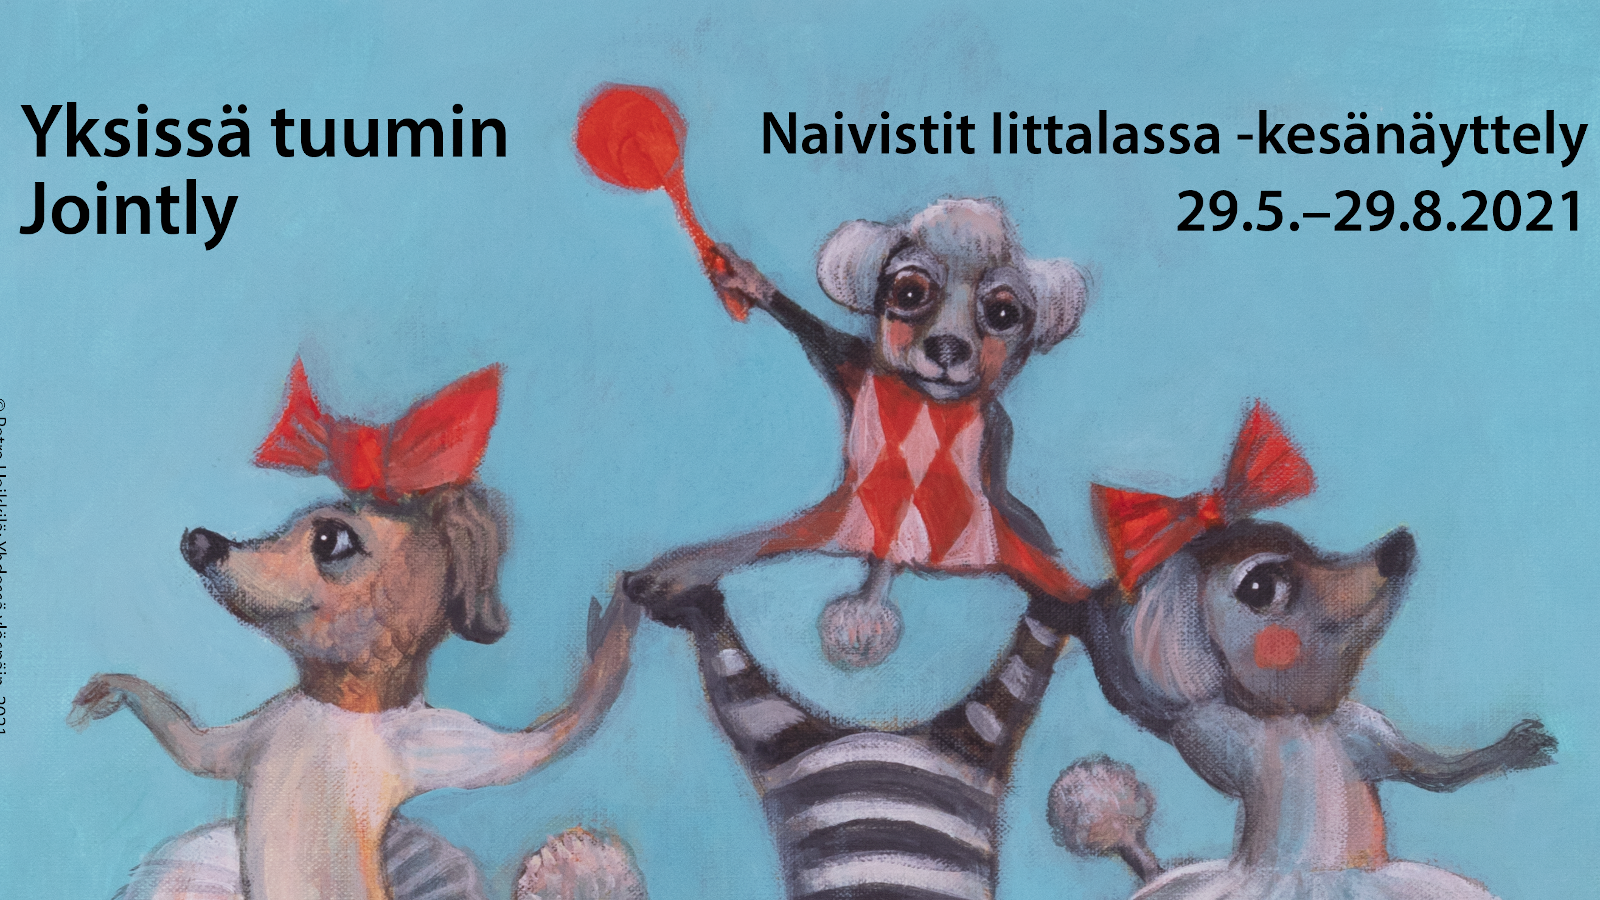 Petra Heikkilän maalaama Naivistit Iittalassa näyttelyn juliste. Näyttely avataan 6.6.2021.